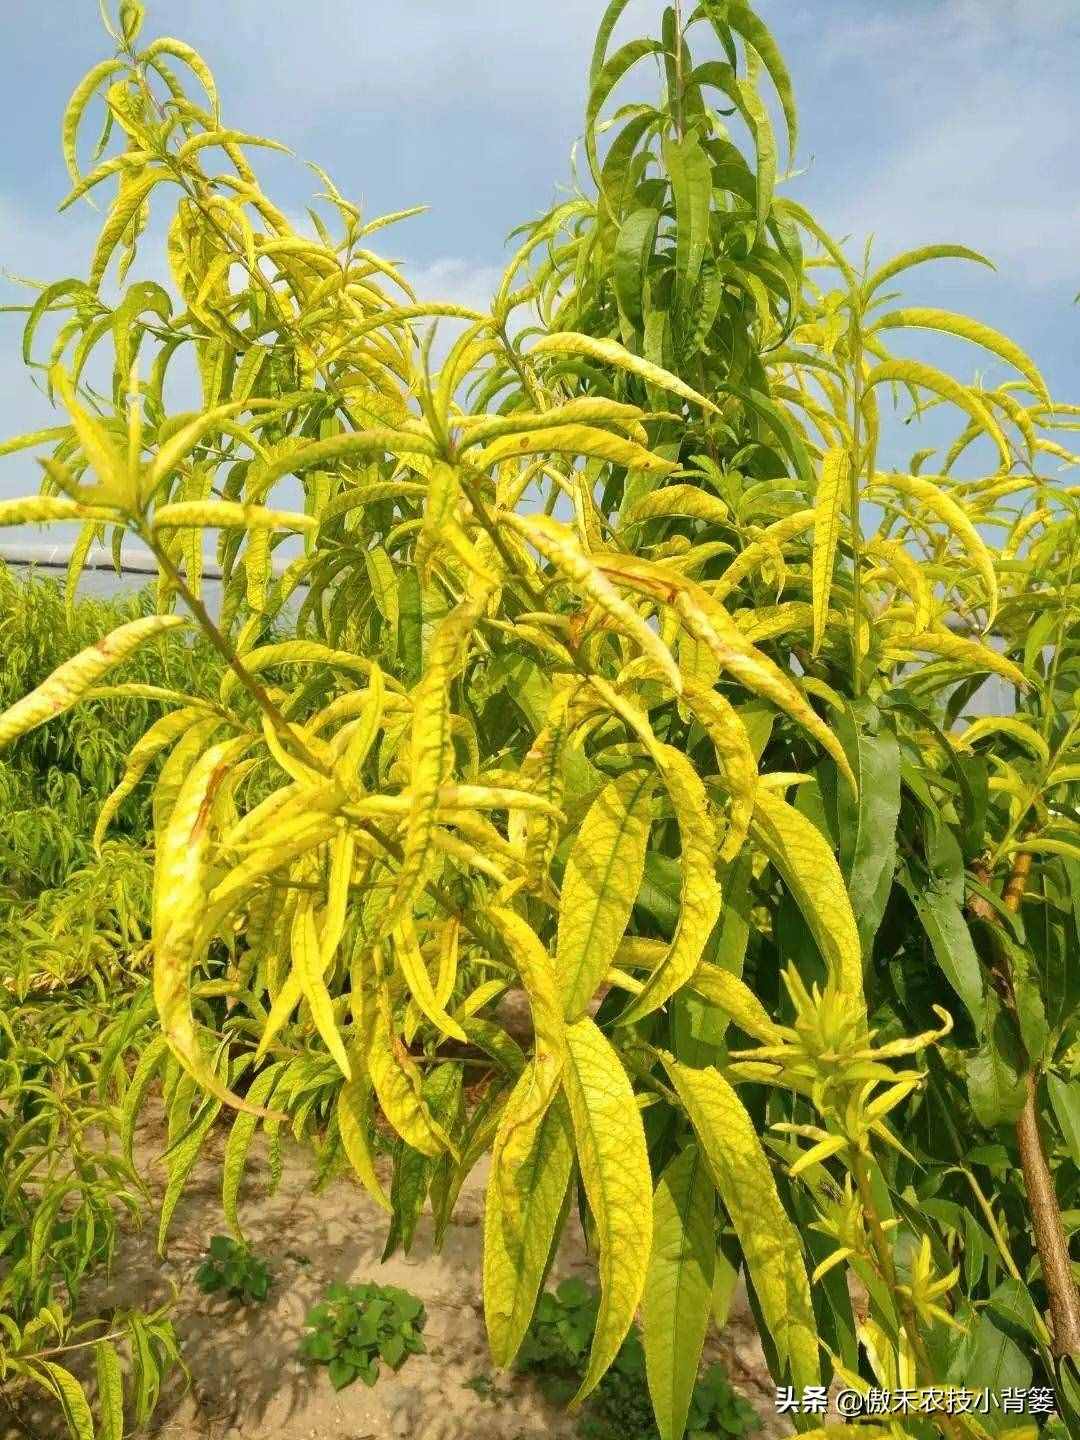 作物叶子发黄，如何判断是缺素原因还是真菌性或细菌性病害？